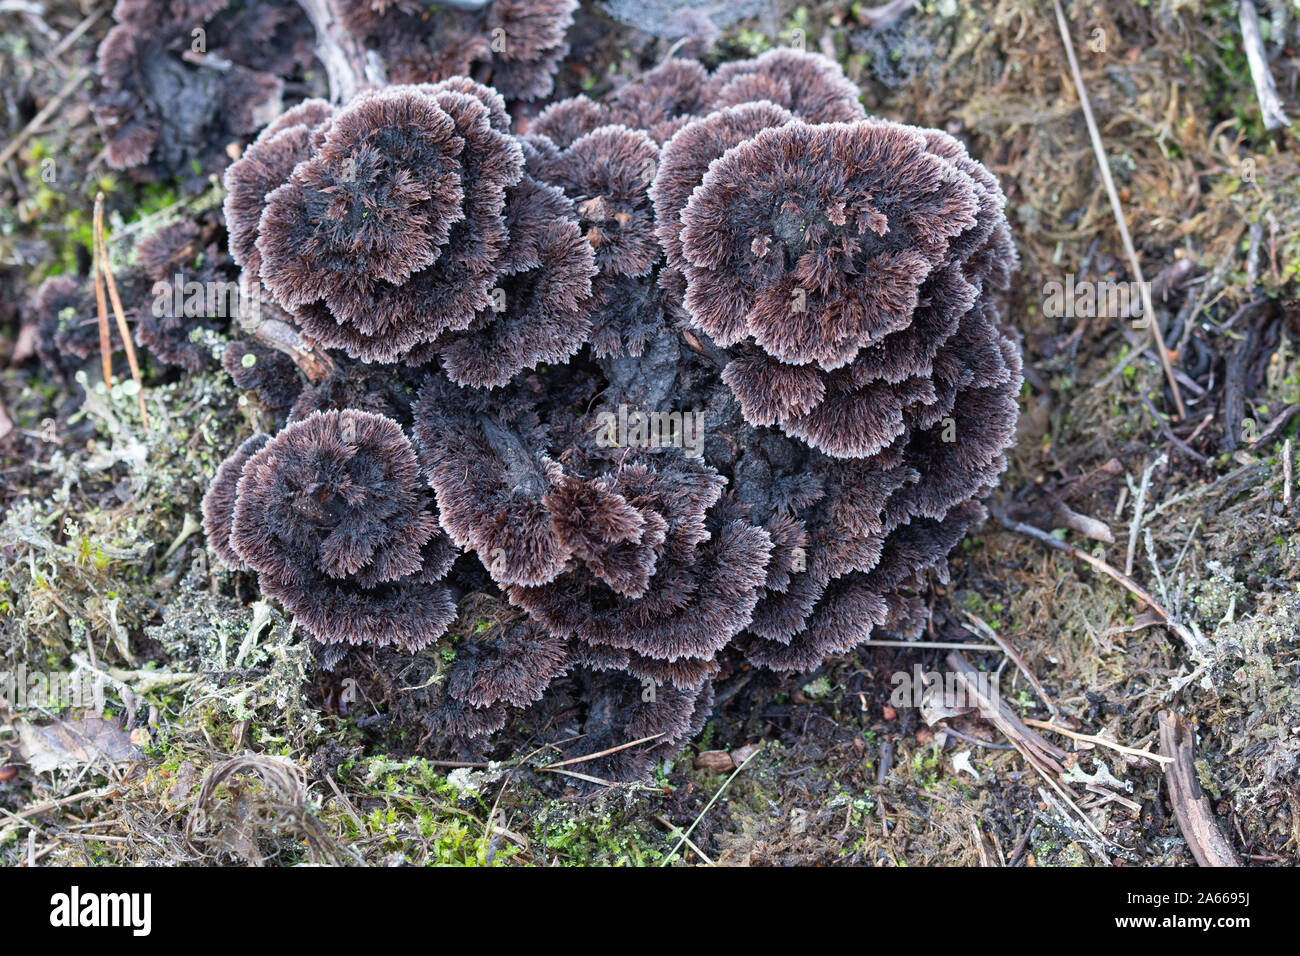 Thelephora terrestris, Earthfan fungus (earth fan) on a tree stump, UK Stock Photo